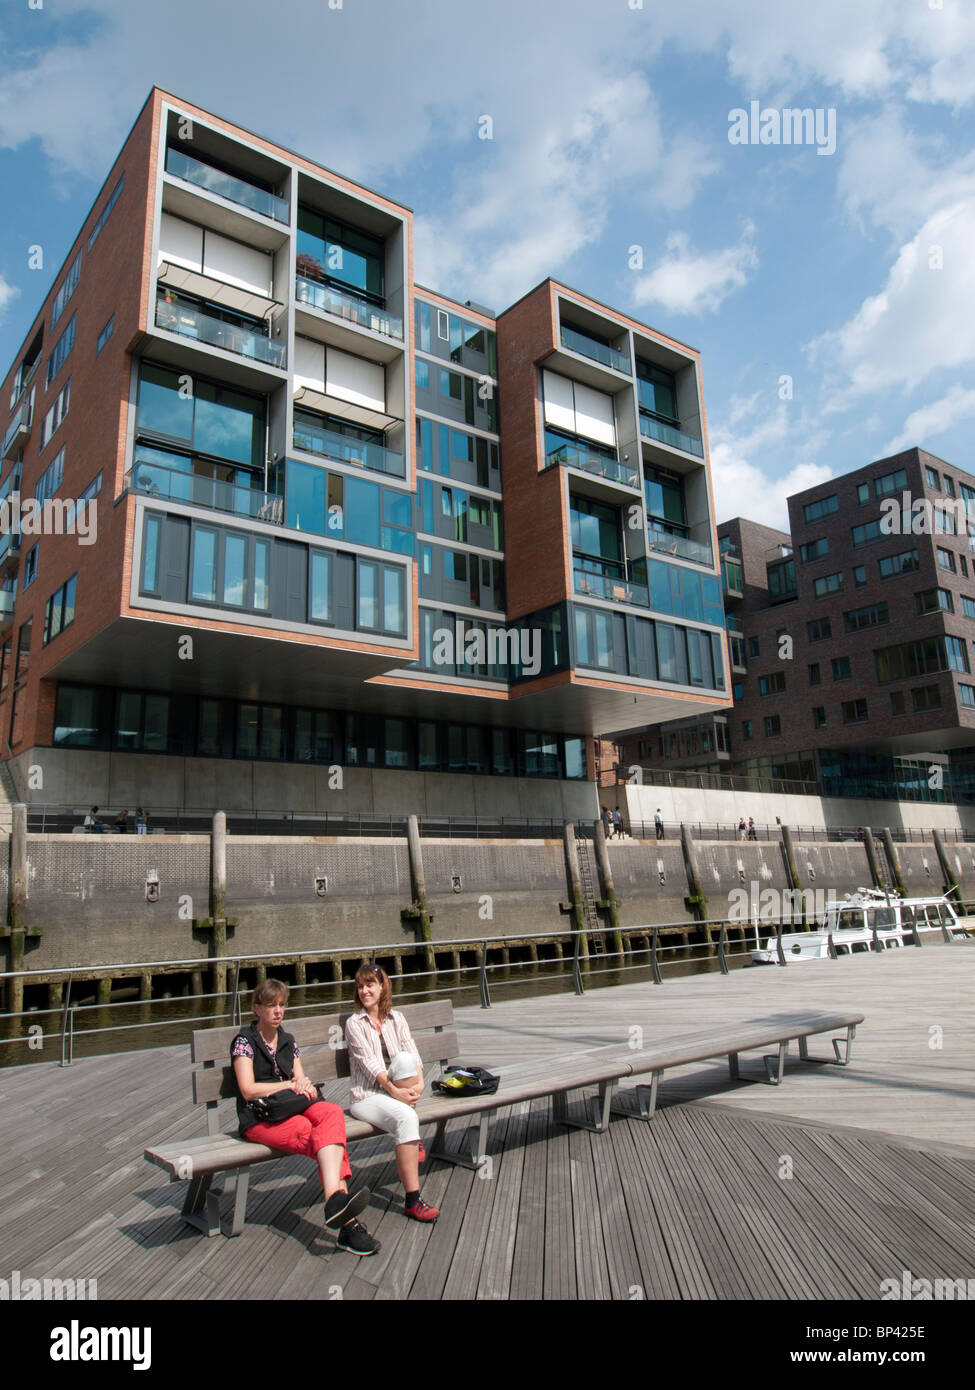 Appartement moderne des bâtiments construits en Hafencty Sandtorhafen nouveau développement immobilier à Hambourg Allemagne Banque D'Images